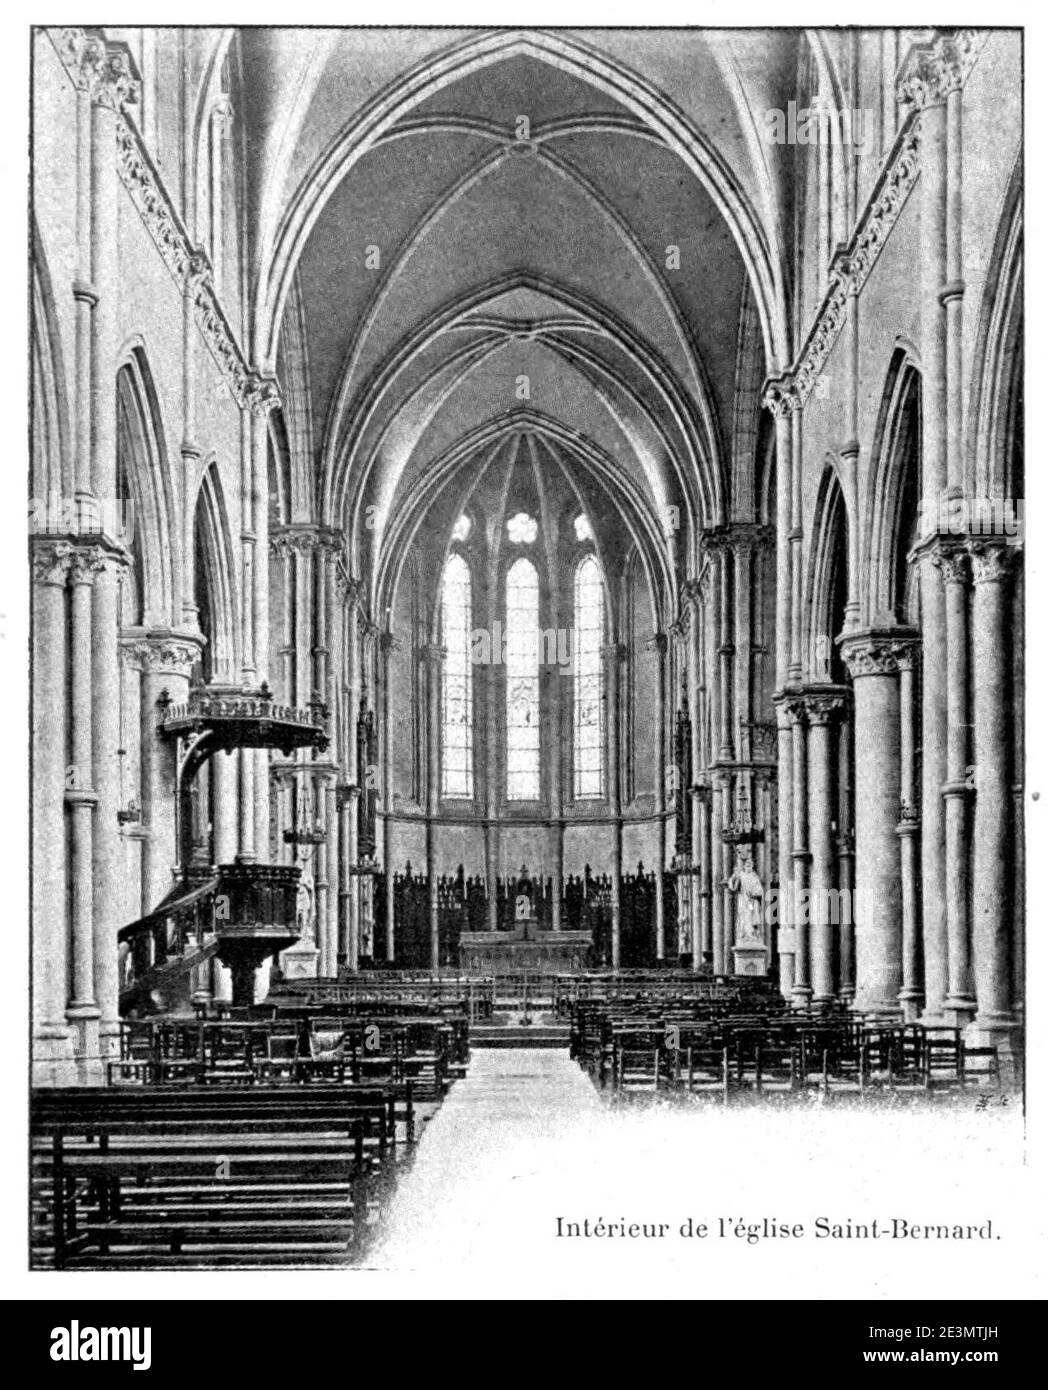 Martin - Histoire des églises et chapelles de Lyon, 1908, tome I 0358. Stock Photo